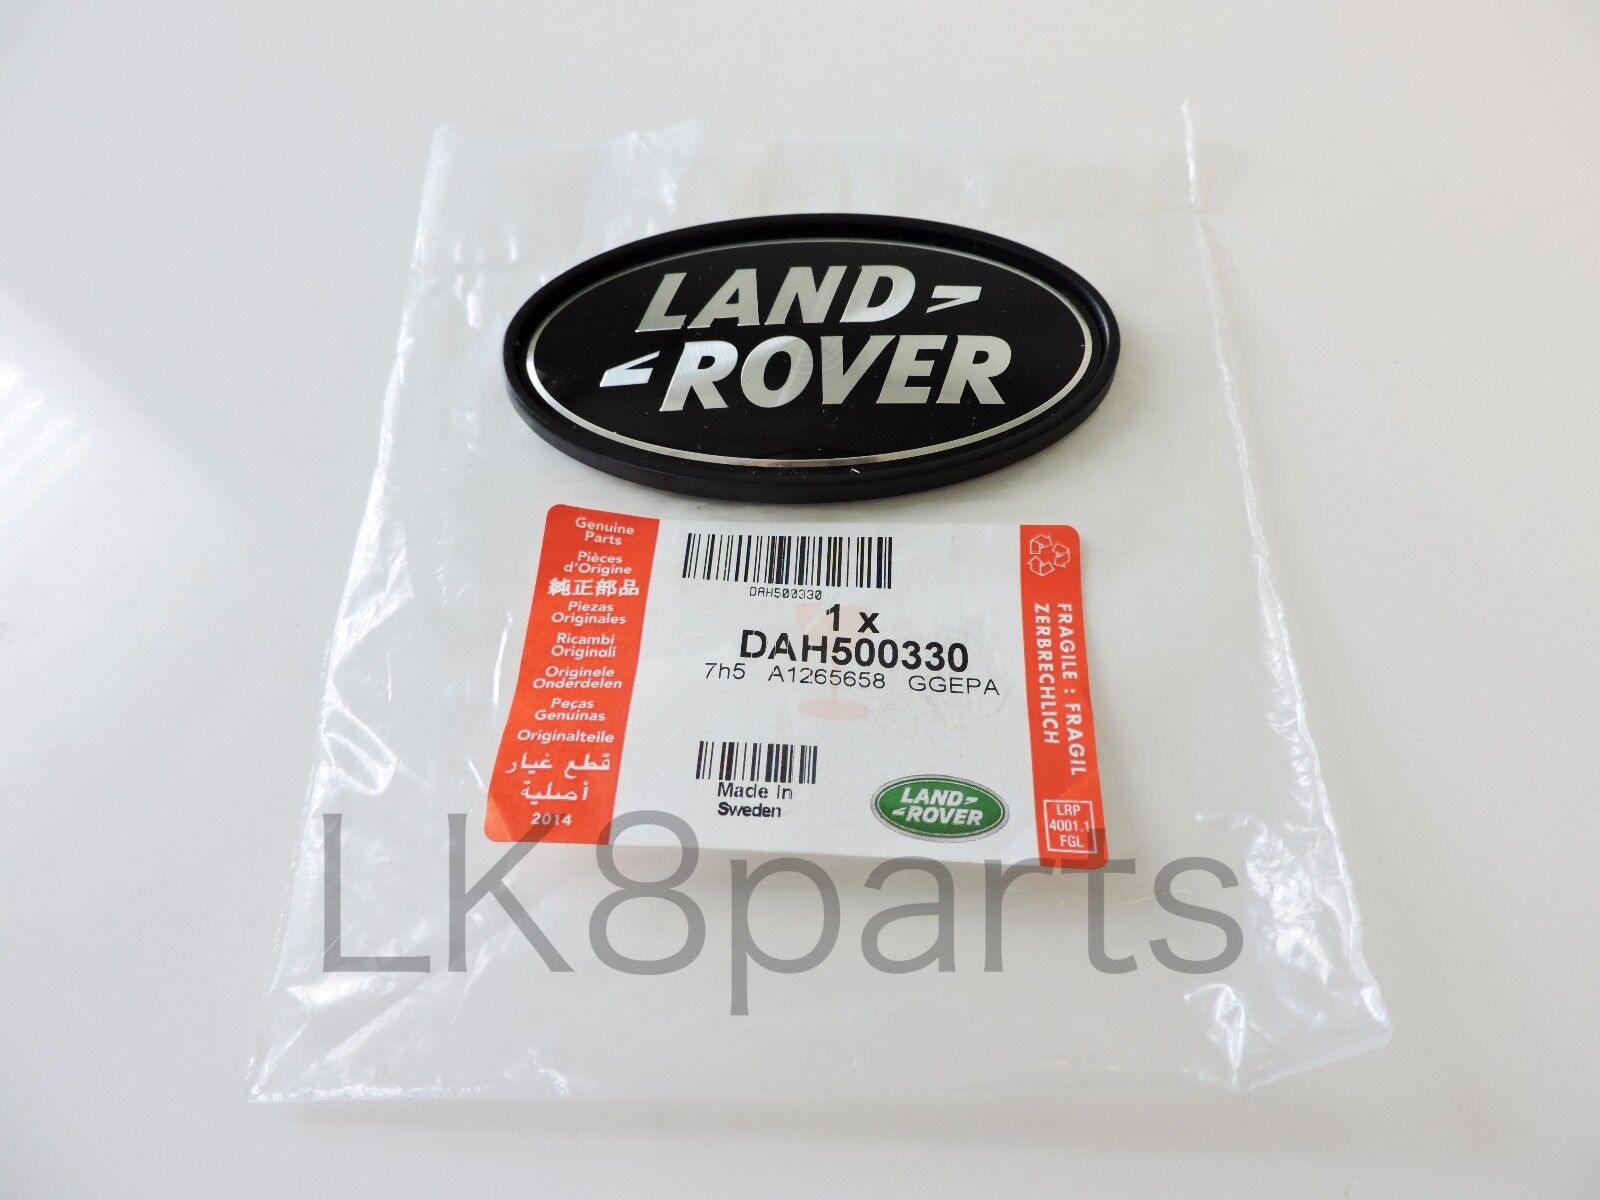 Range Rover Sport Supercharged Tailgate Emblem Black Land Rover Logo Oval Badge 